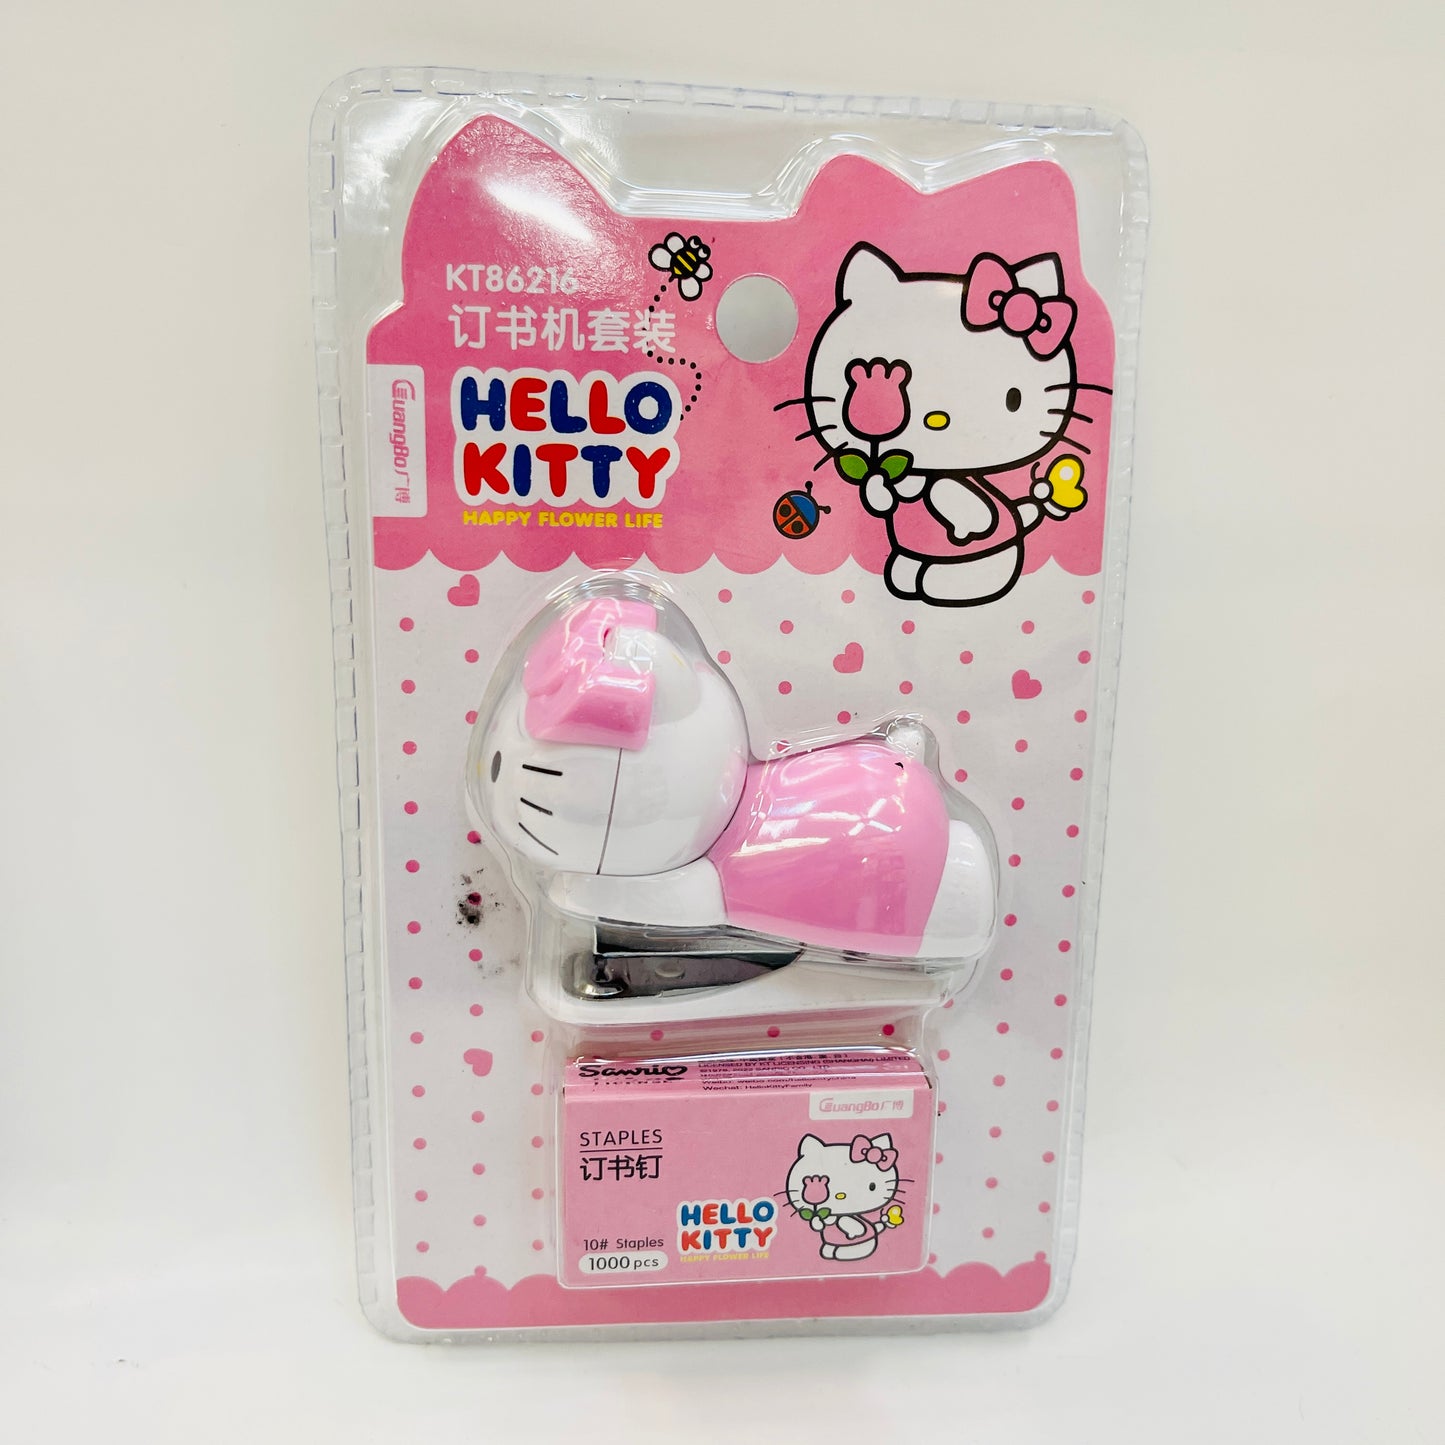 Hello Kitty Mini Stapler with Staples